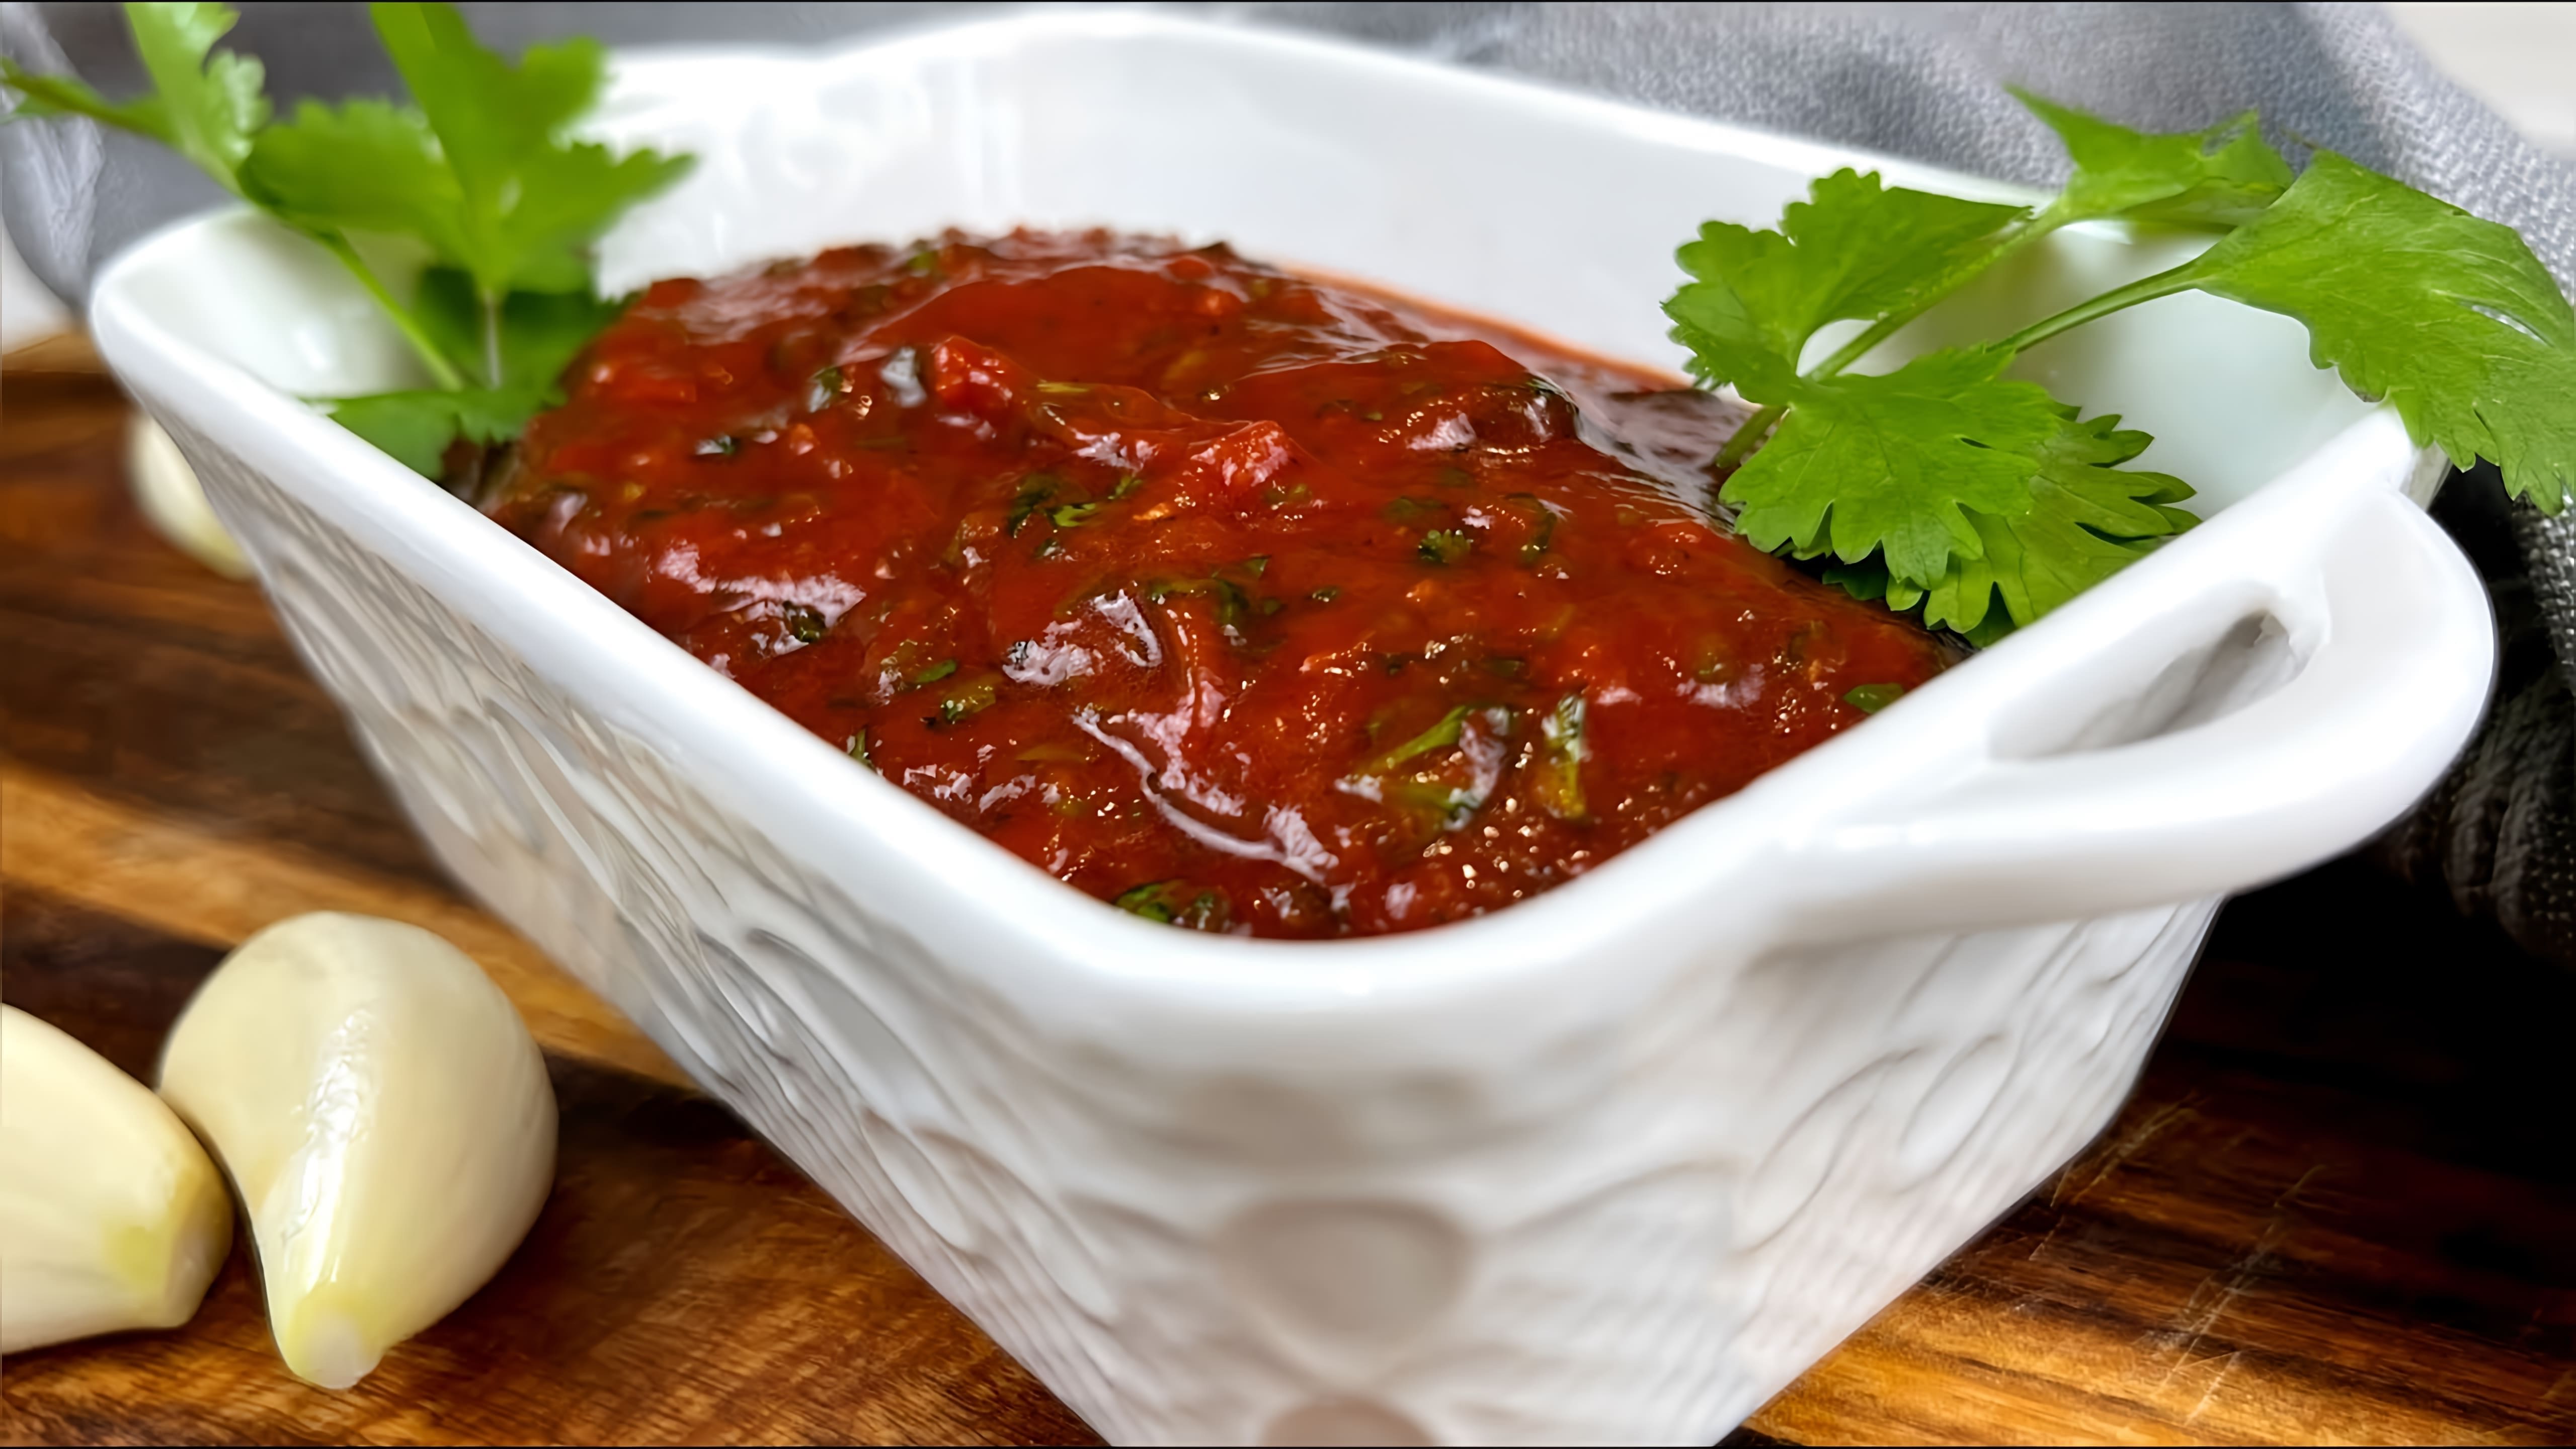 Видео рецепт соуса для подачи с шашлыком (мясными шашлыками) или другими жареными мясными блюдами